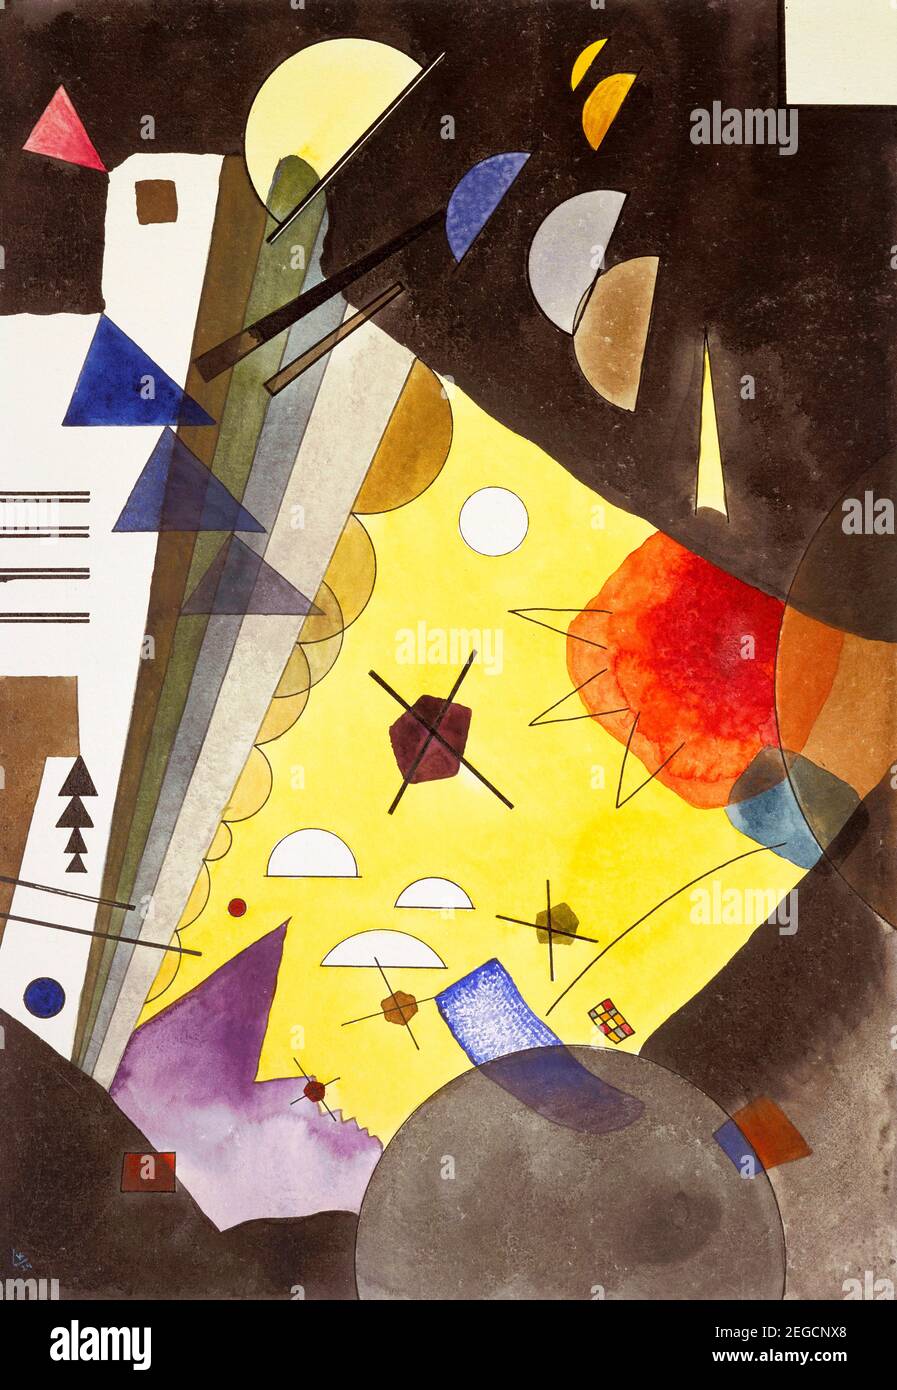 Pittura di Kandinsky. 'Spannung nach oben' (tensione in altezza) di Wassily Kandinsky (1866-1944), grafite, inchiostro e acquerello su carta, 1924 Foto Stock